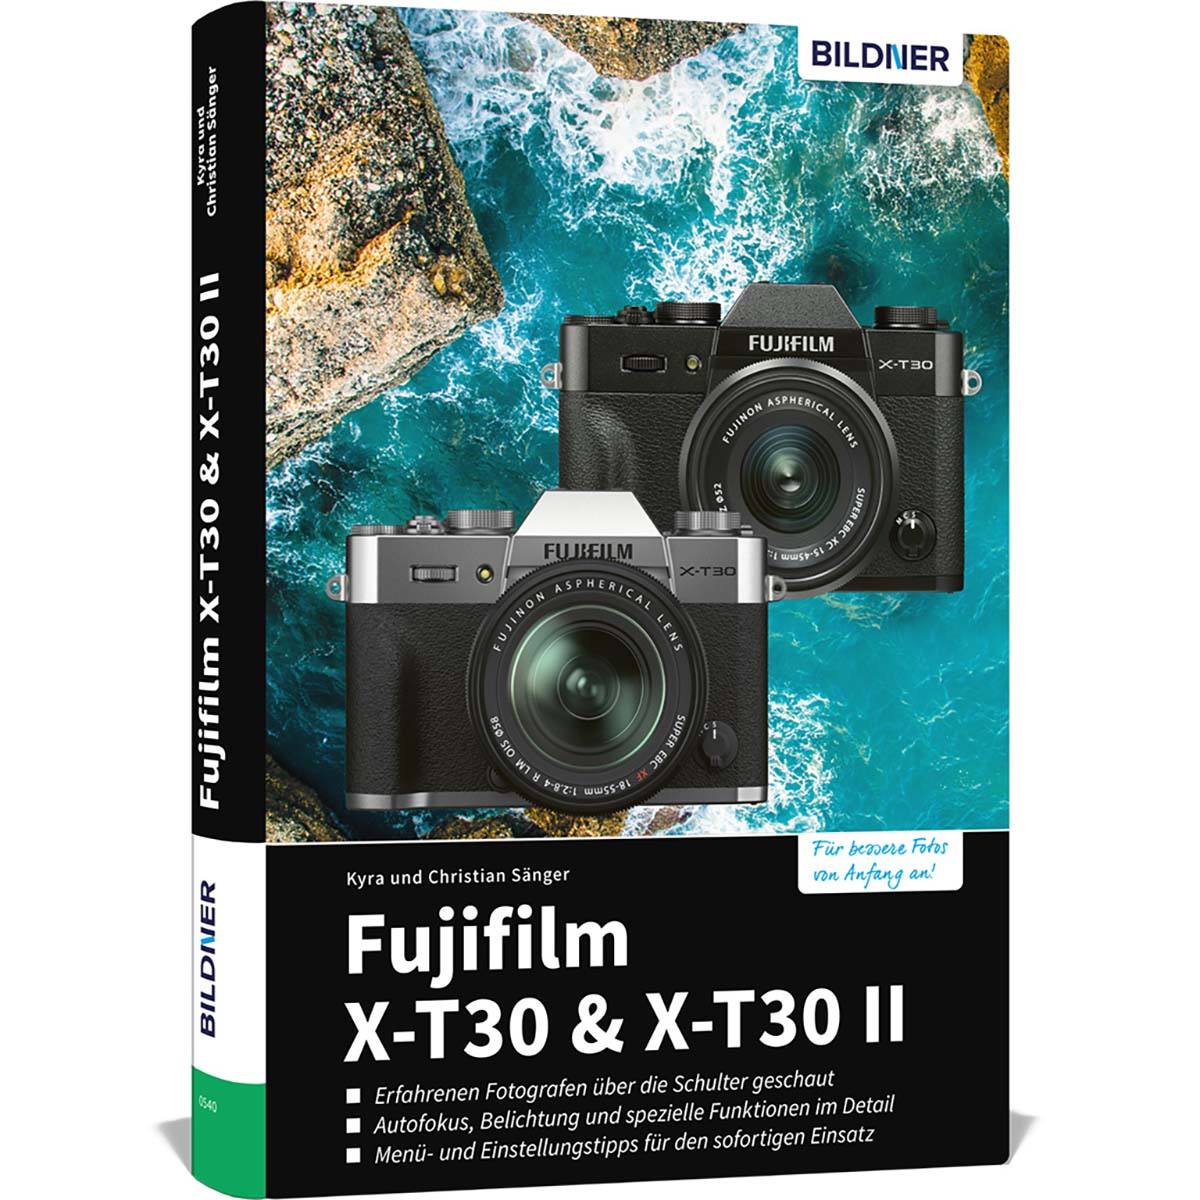 Fujifilm X-T30 / X-T30 II umfangreiche Praxisbuch Das - Kamera! zu Ihrer